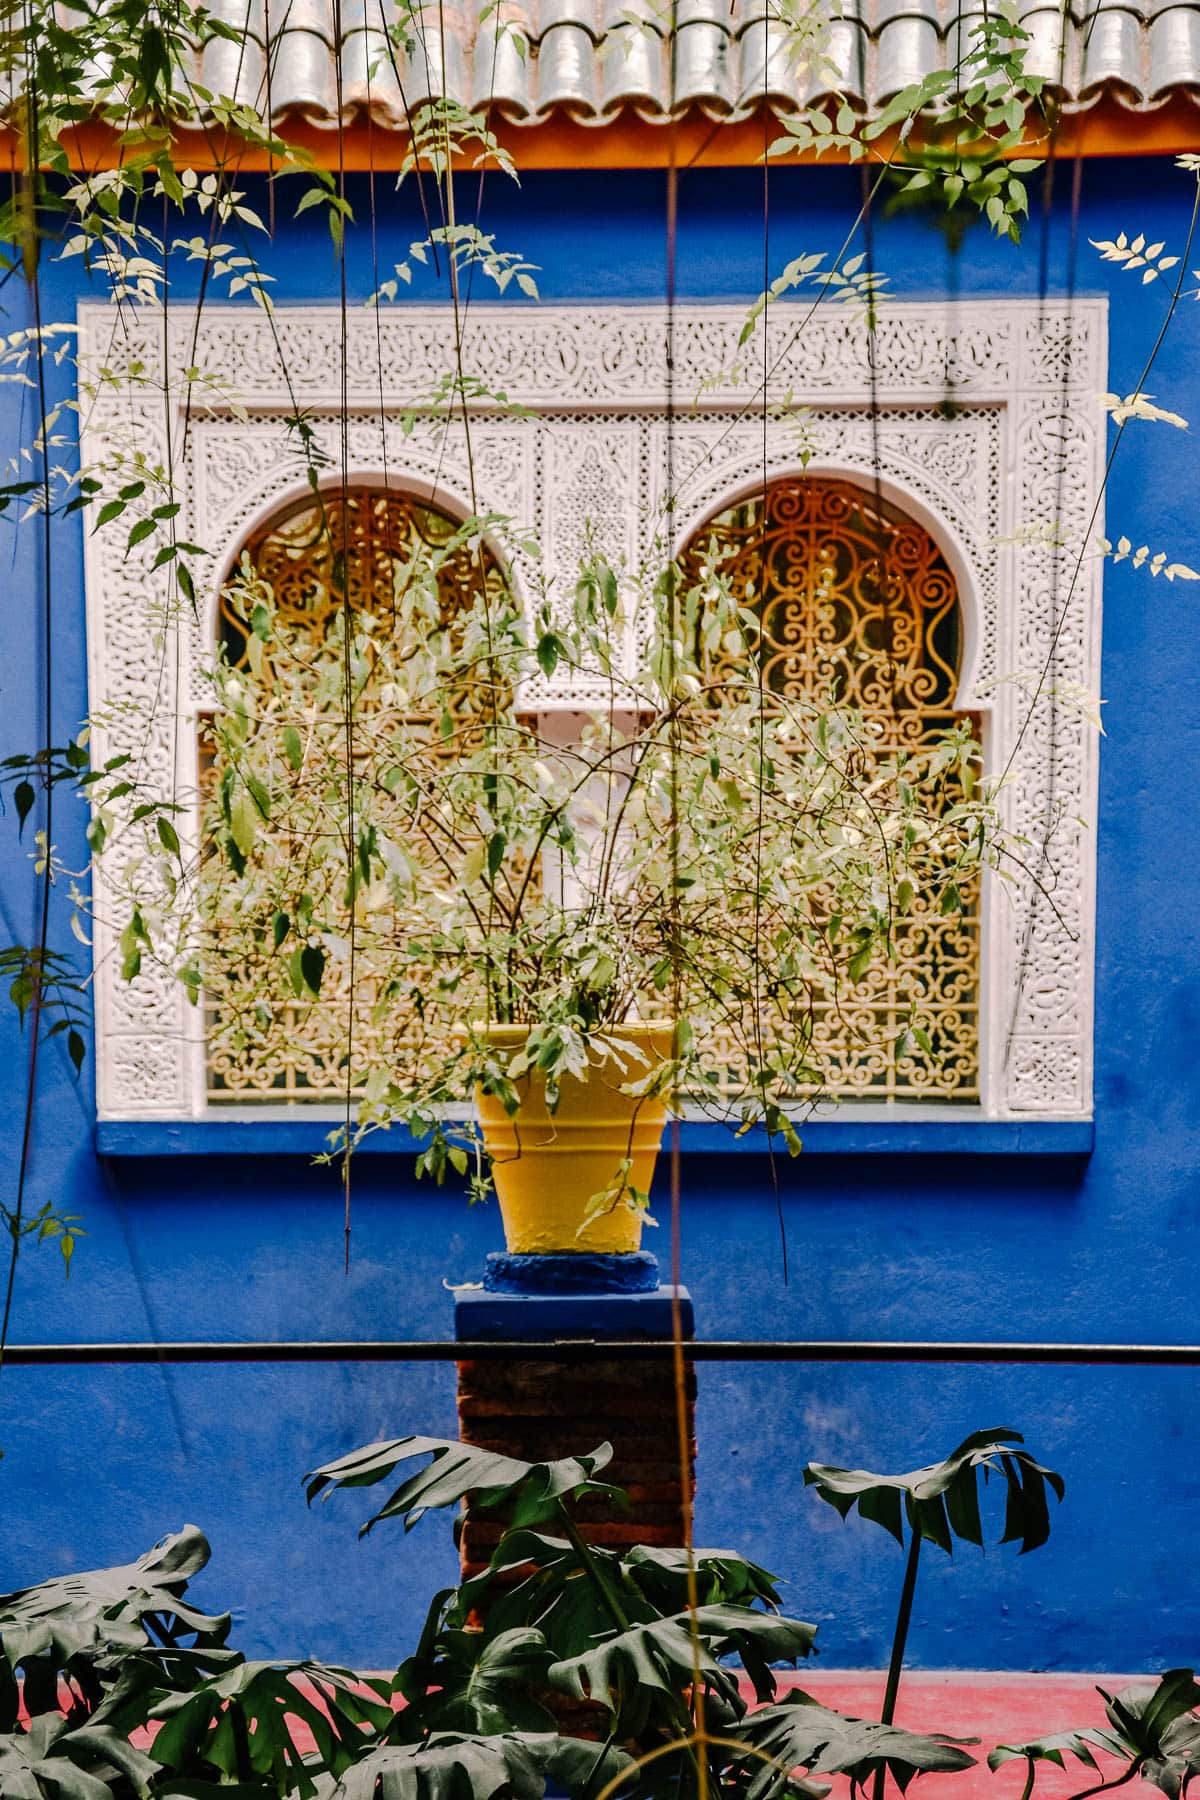 Urlaub in Marokko: Die 10 schönsten Fotospots in Marrakesch